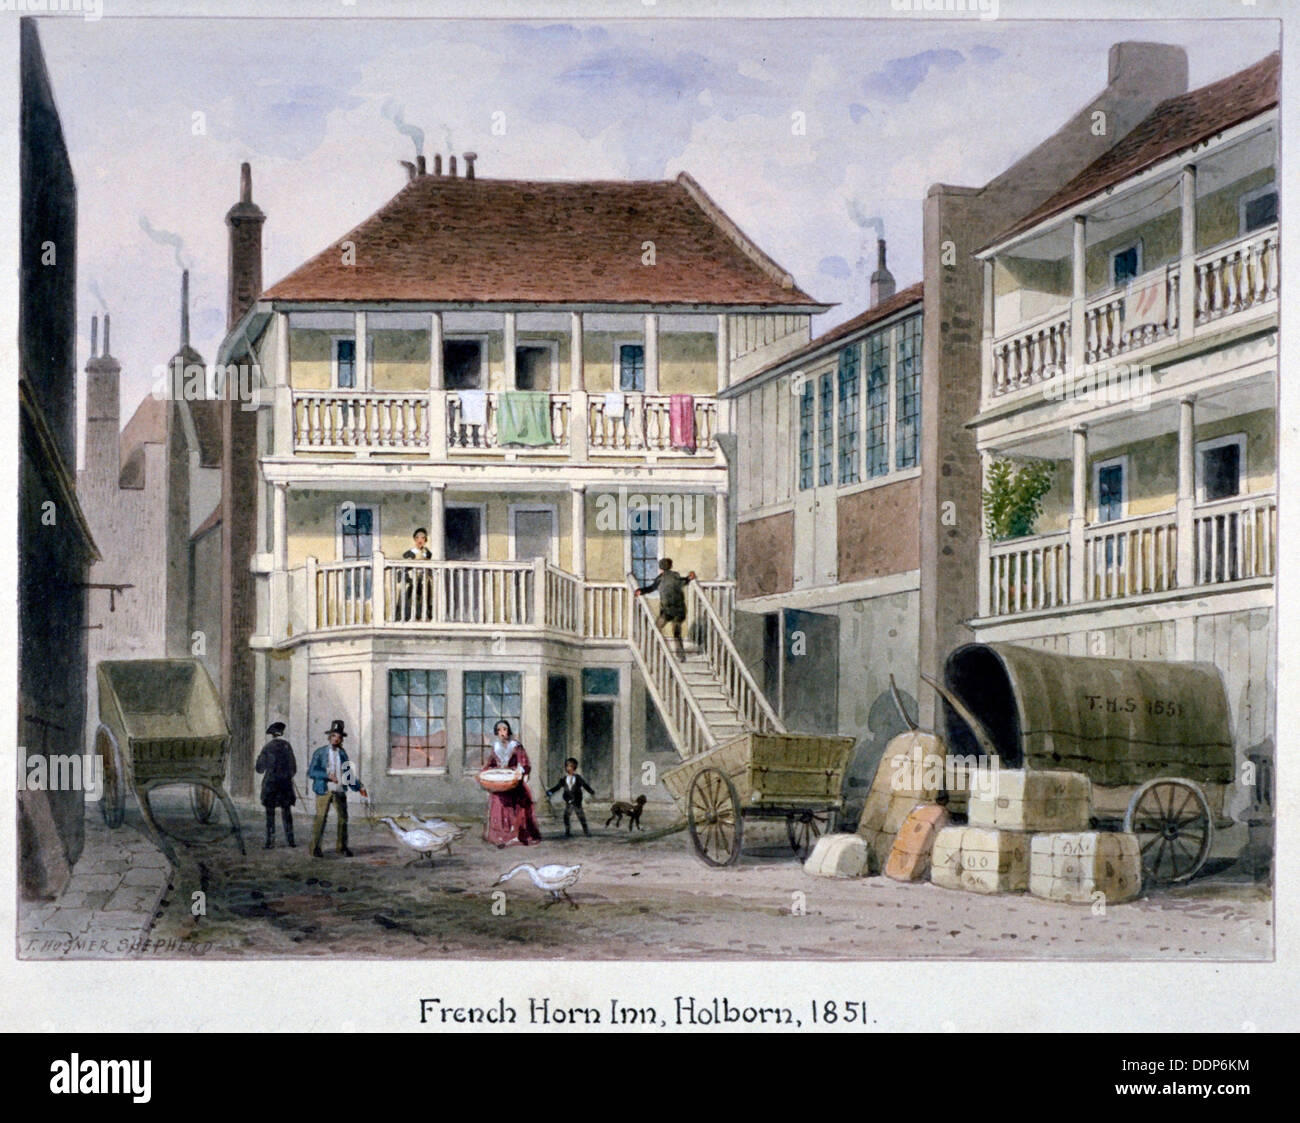 The French Horn Inn, Holborn, London, 1851.                  Artist: Thomas Hosmer Shepherd Stock Photo